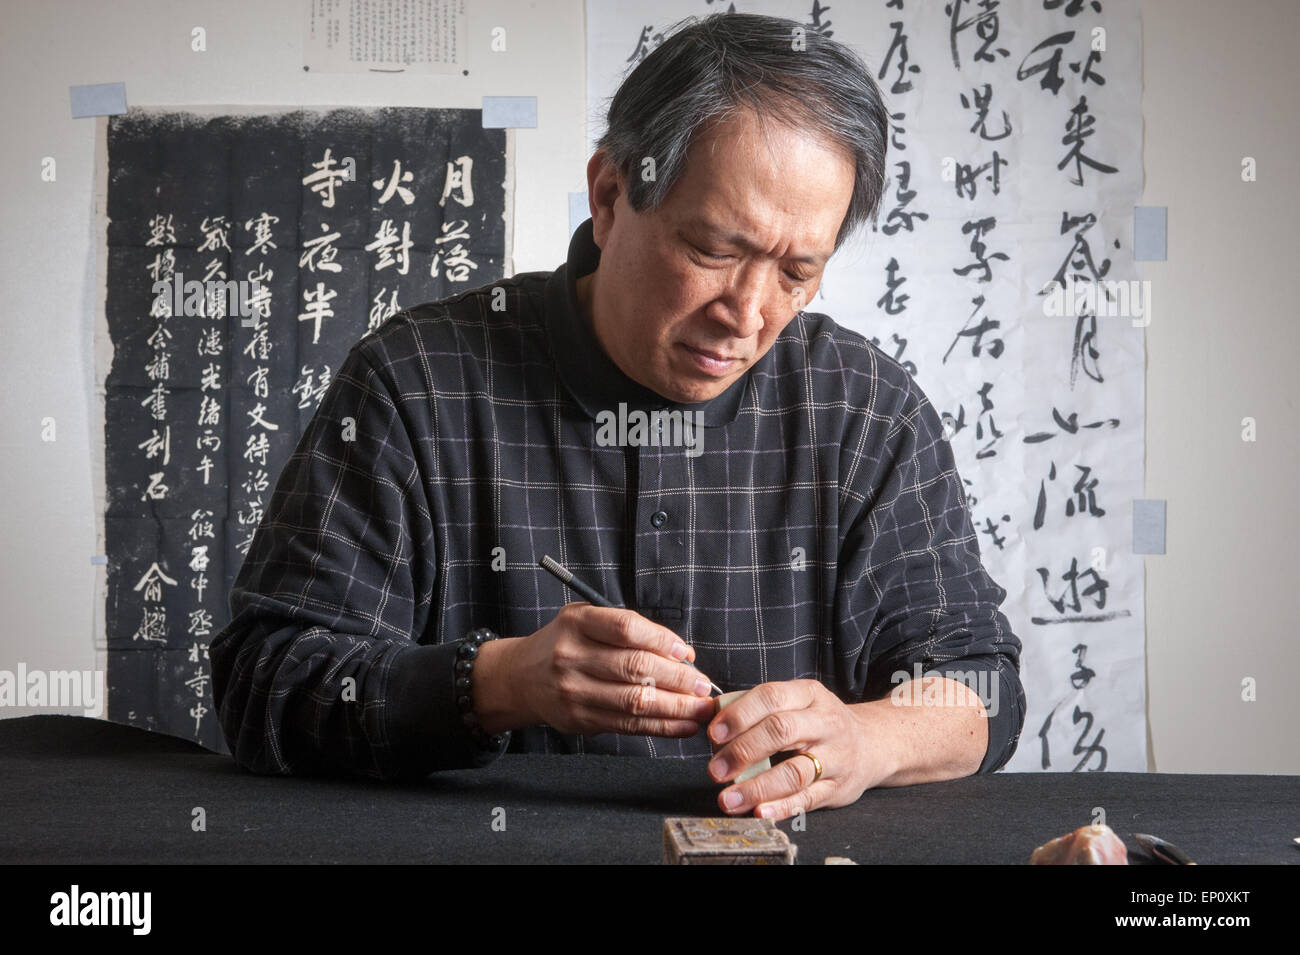 Hombre asiático carving sello sello chino en Gaithersburg, Maryland. Paneles de caligrafía puede verse en el fondo. Foto de stock